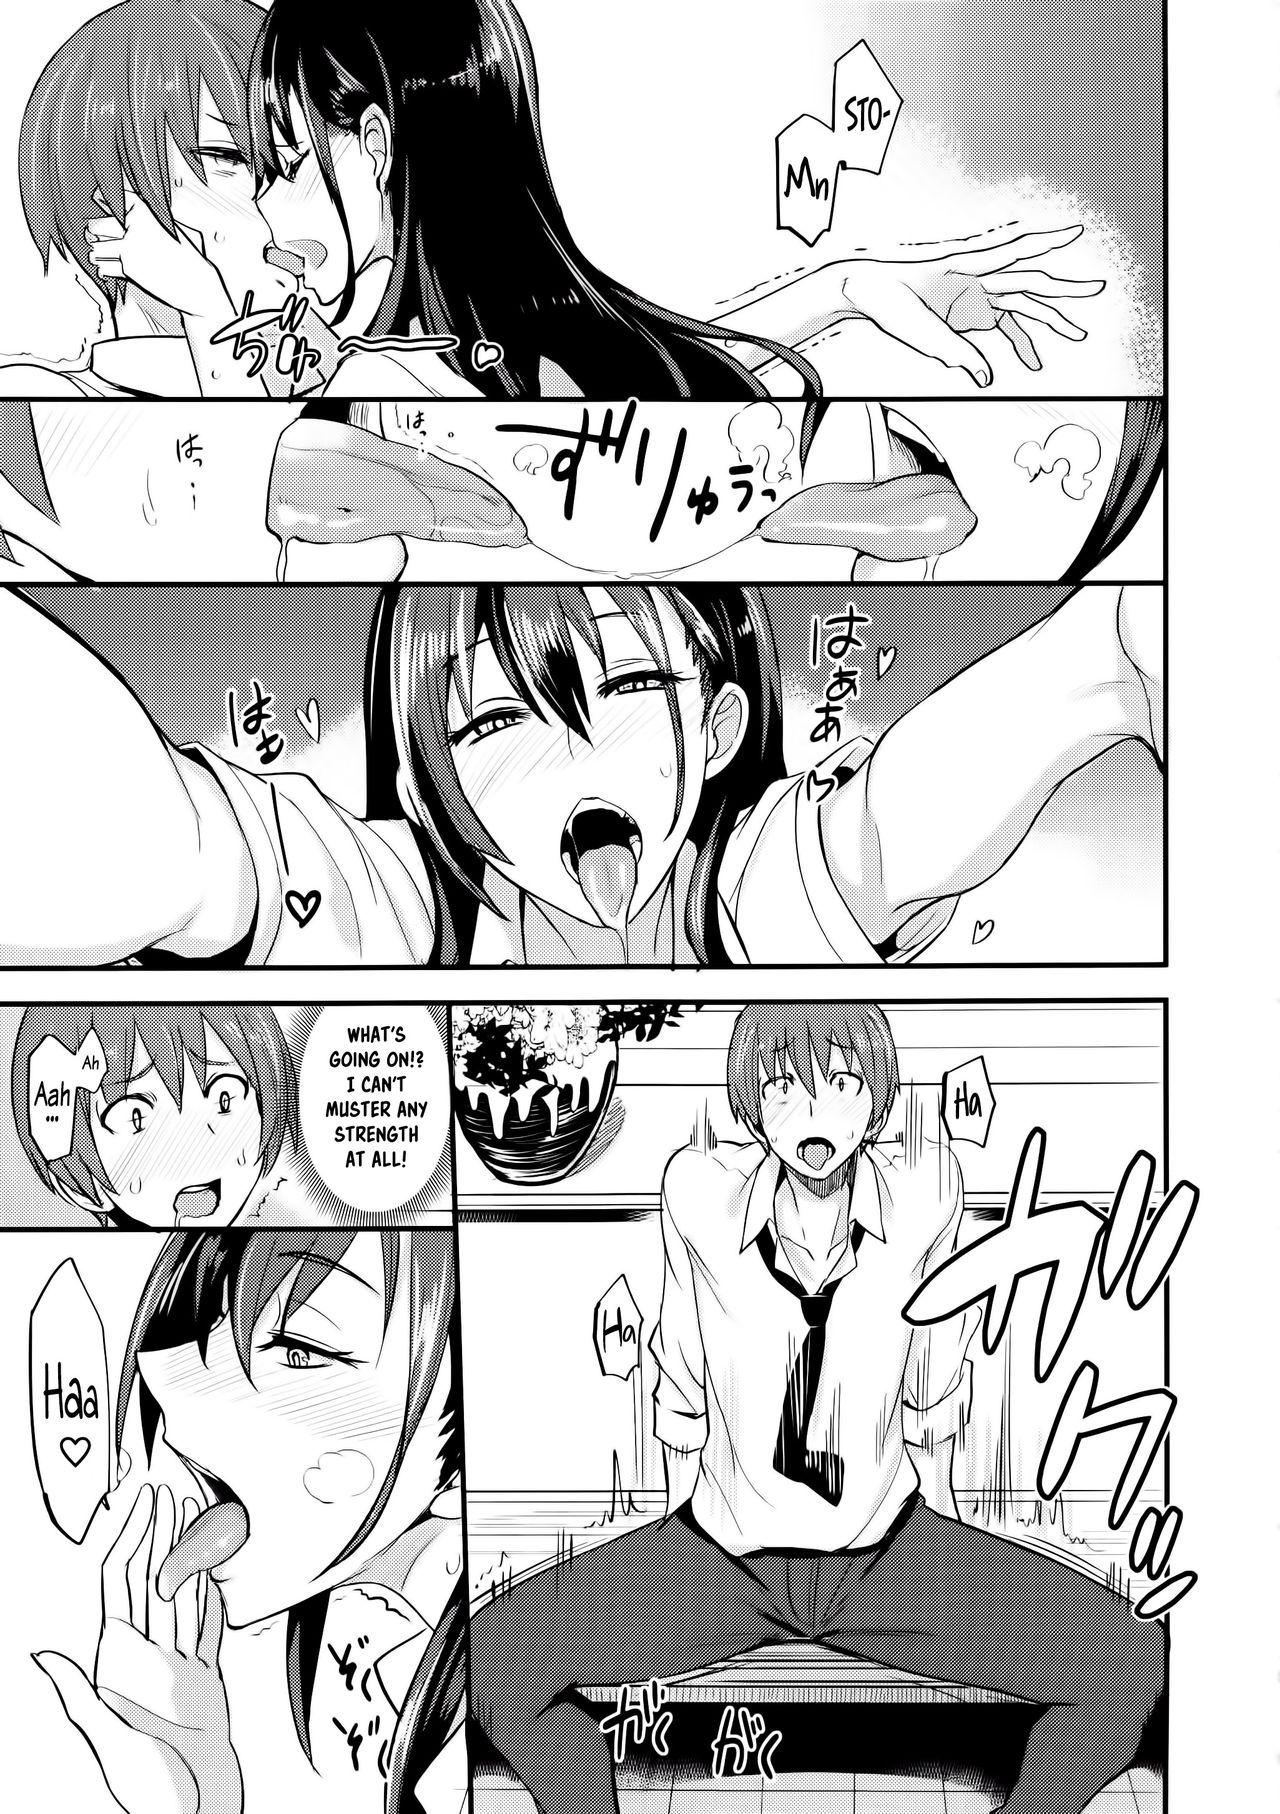 Sucking Cocks PHEROMOMANIA Vol. 1 Kanzenban Chicks - Page 12